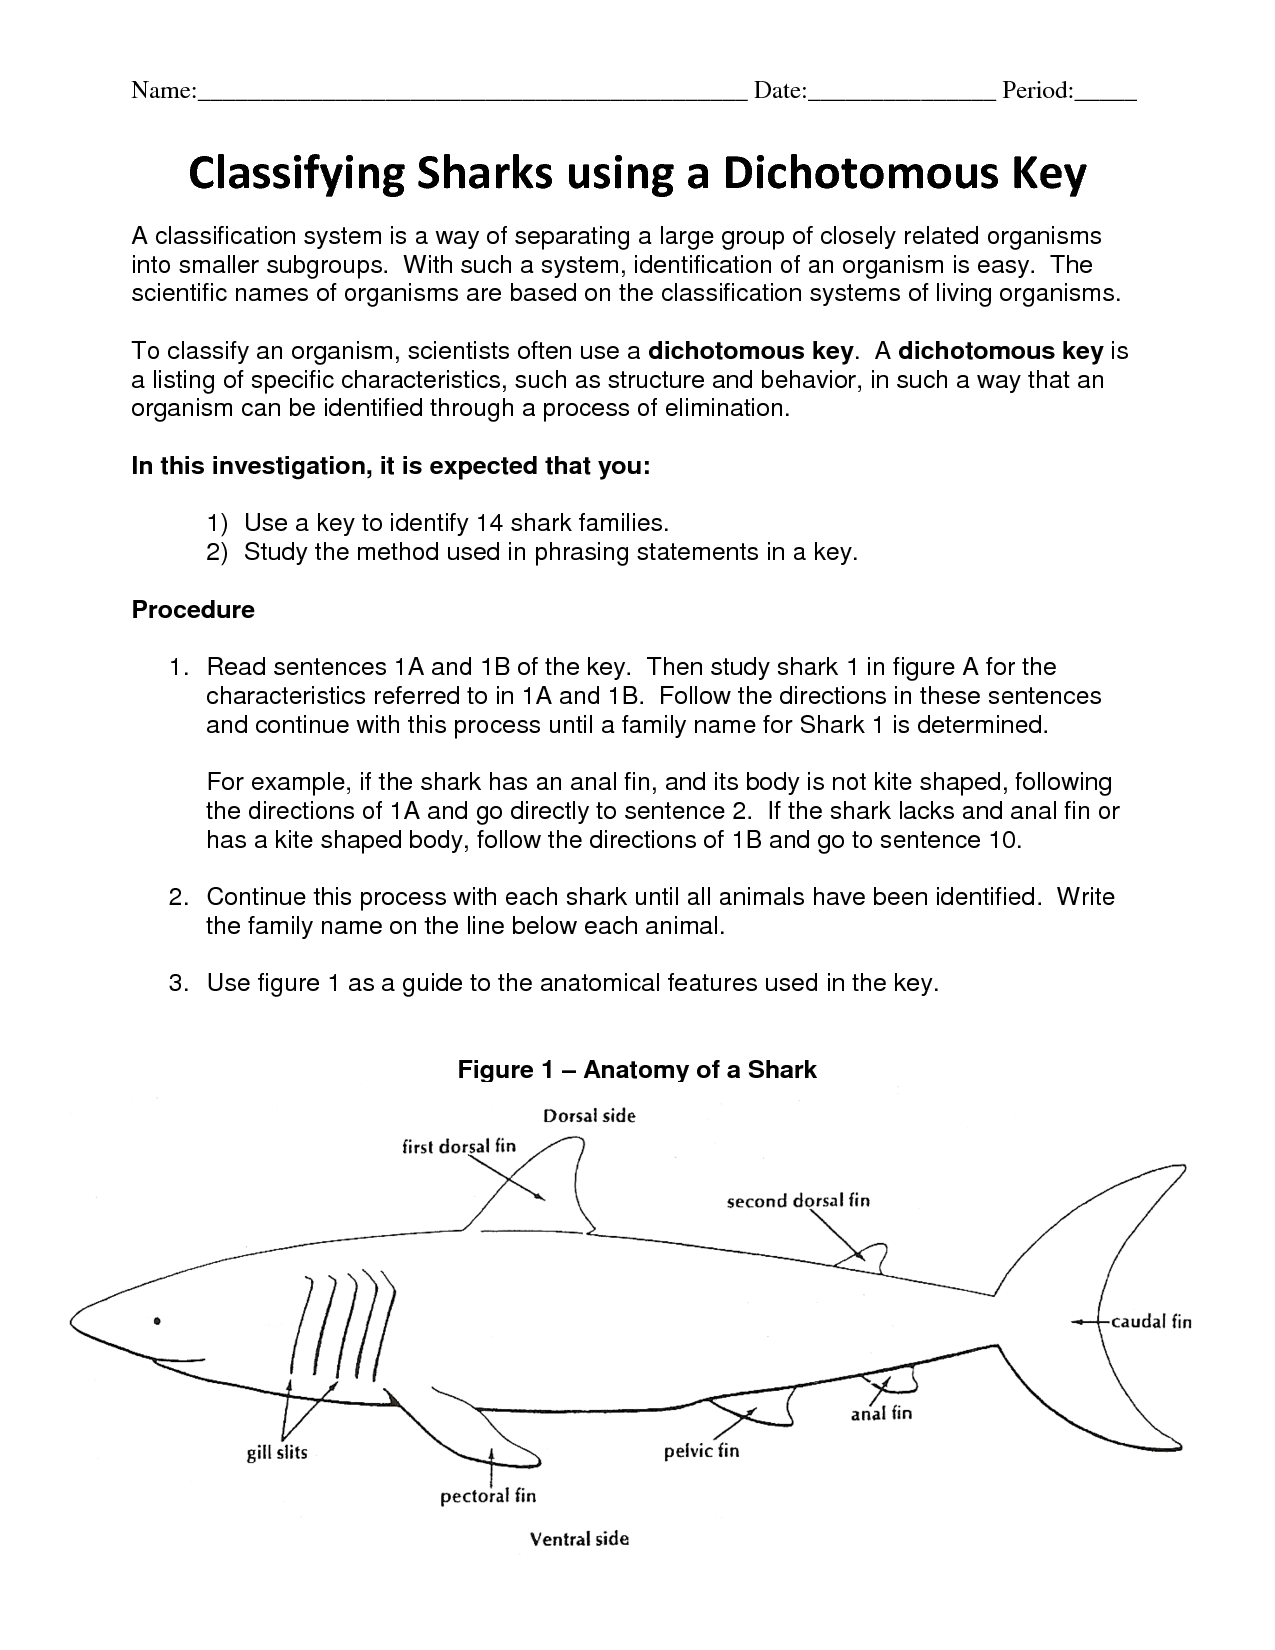 Shark Dichotomous Key Worksheet Answers Pdf